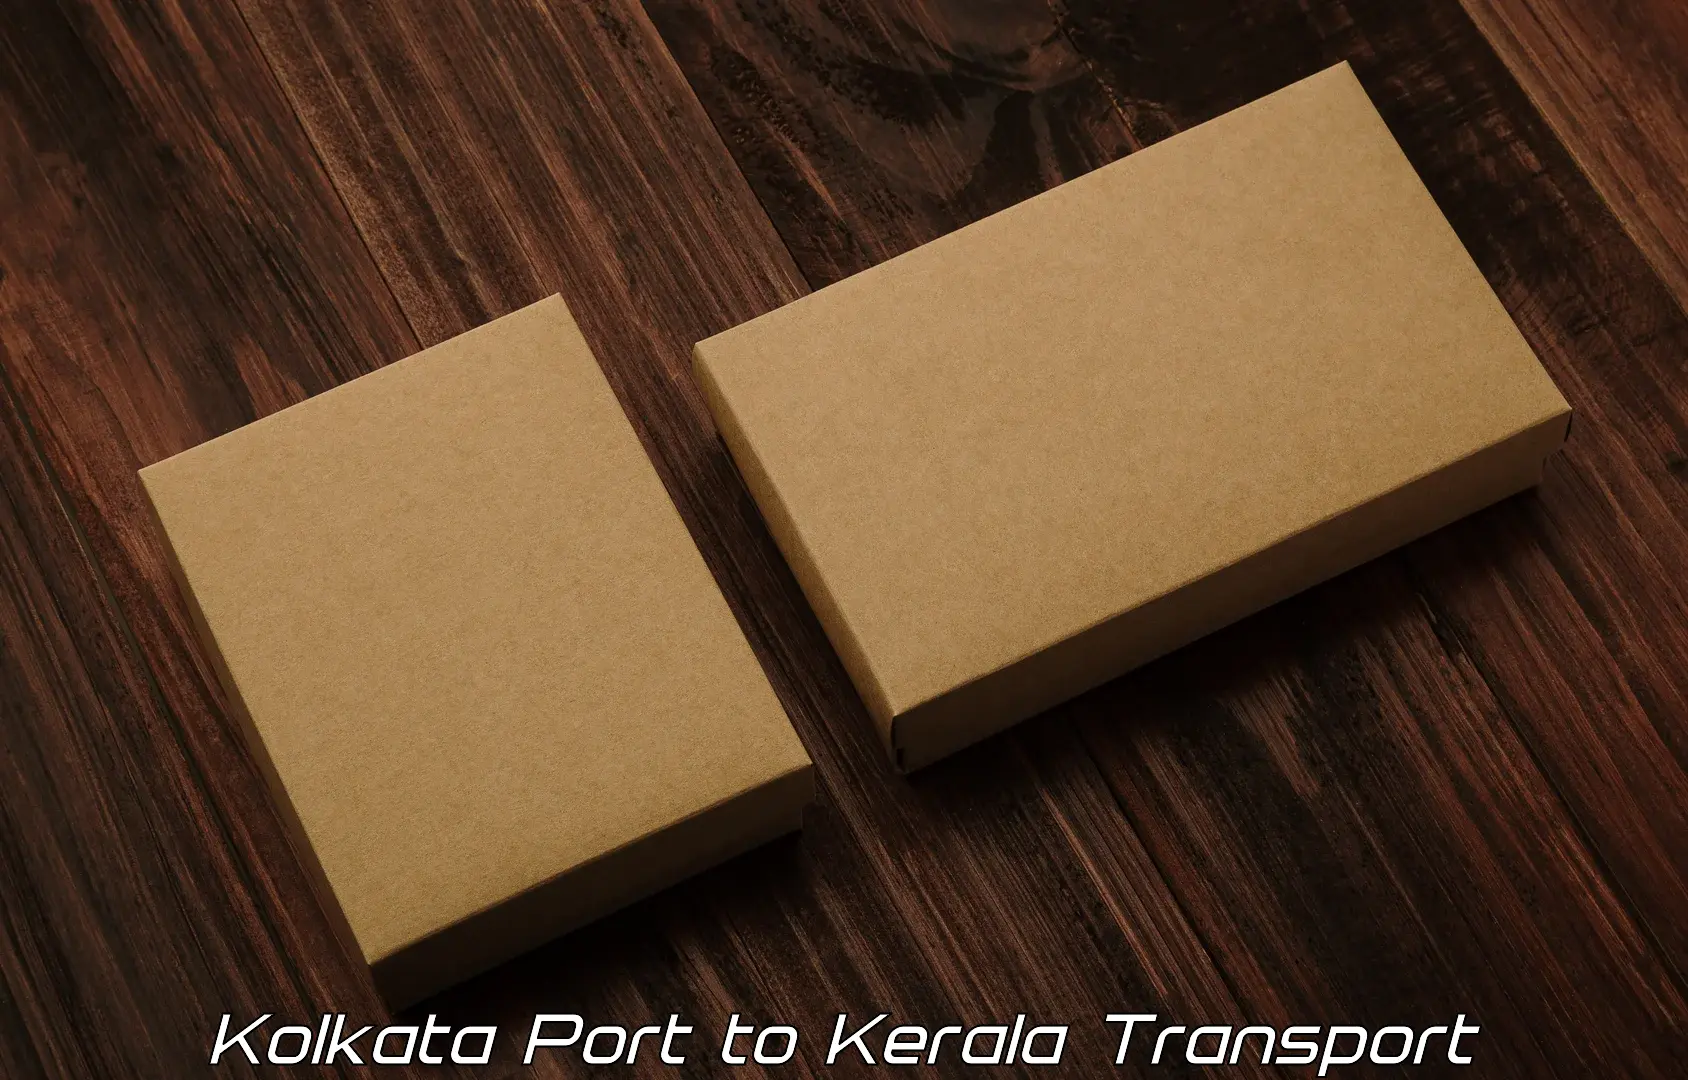 Furniture transport service in Kolkata Port to Pandikkad